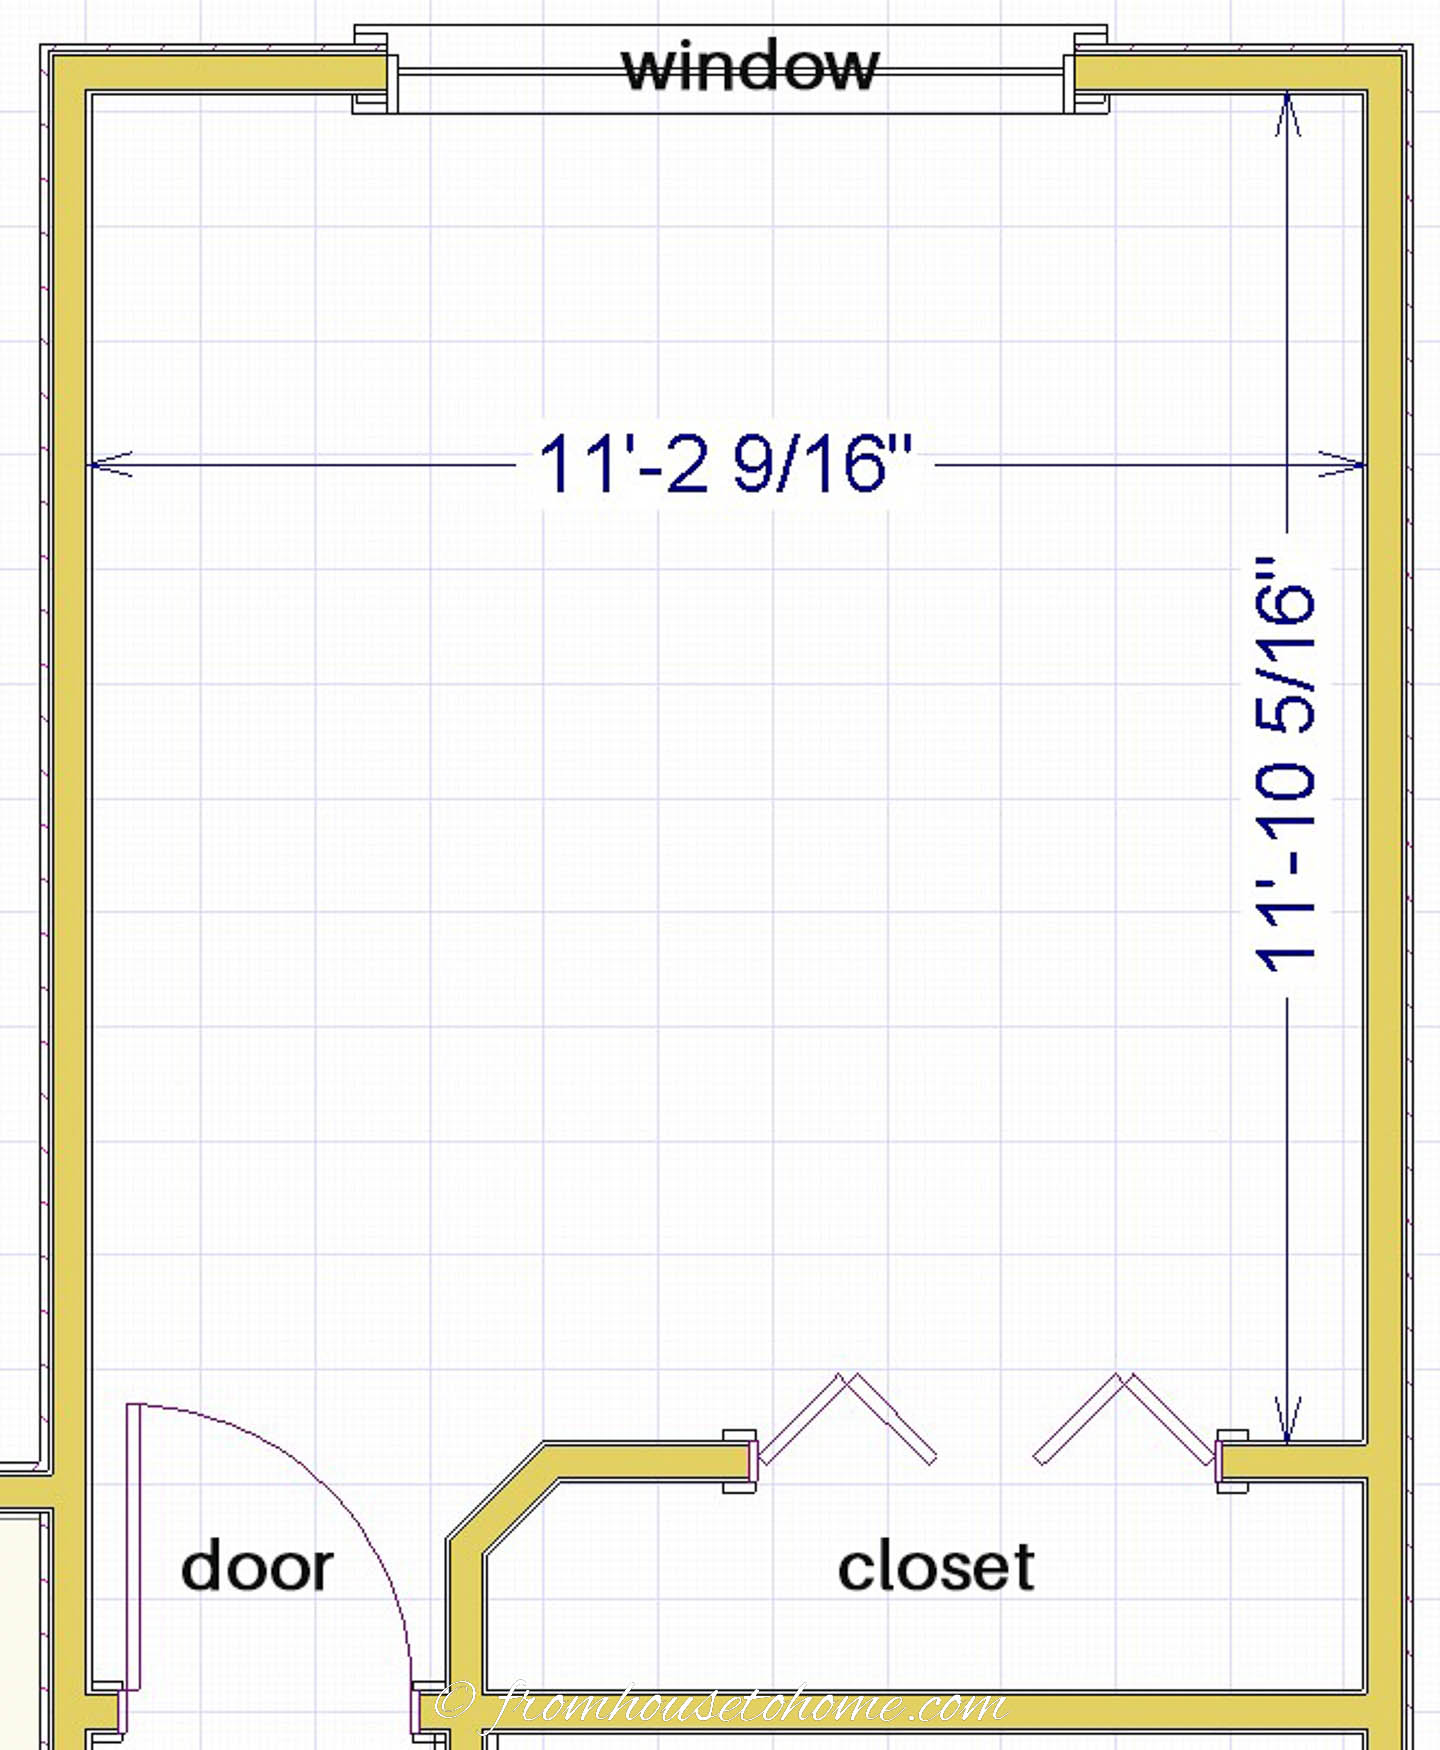 empty room diagram with window, door and closet